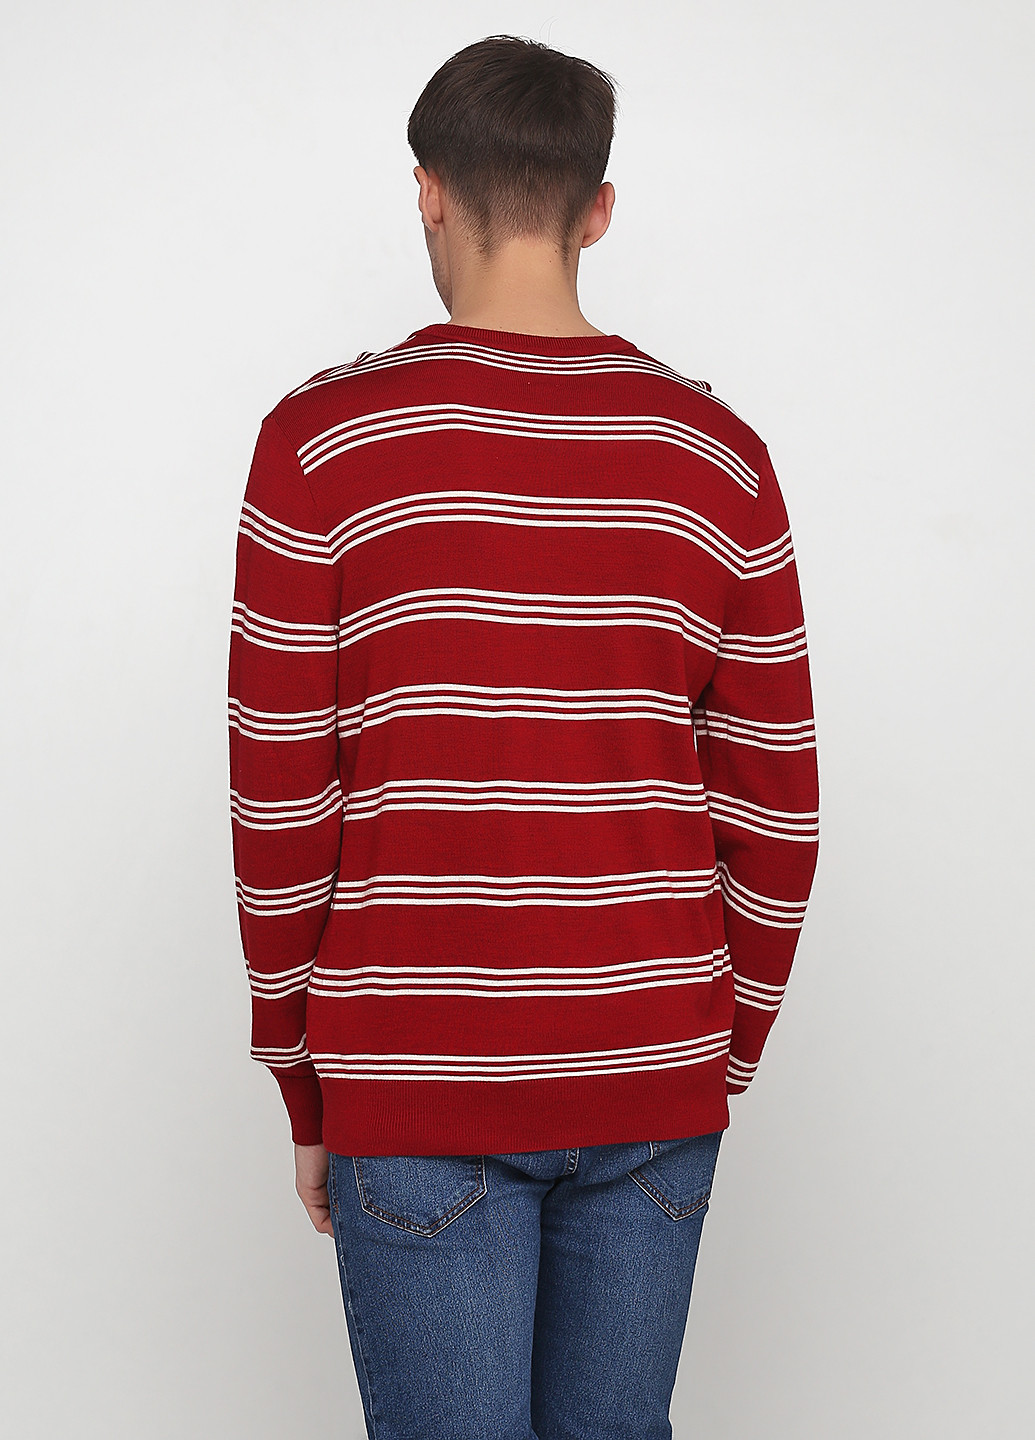 Красный демисезонный пуловер пуловер Gap